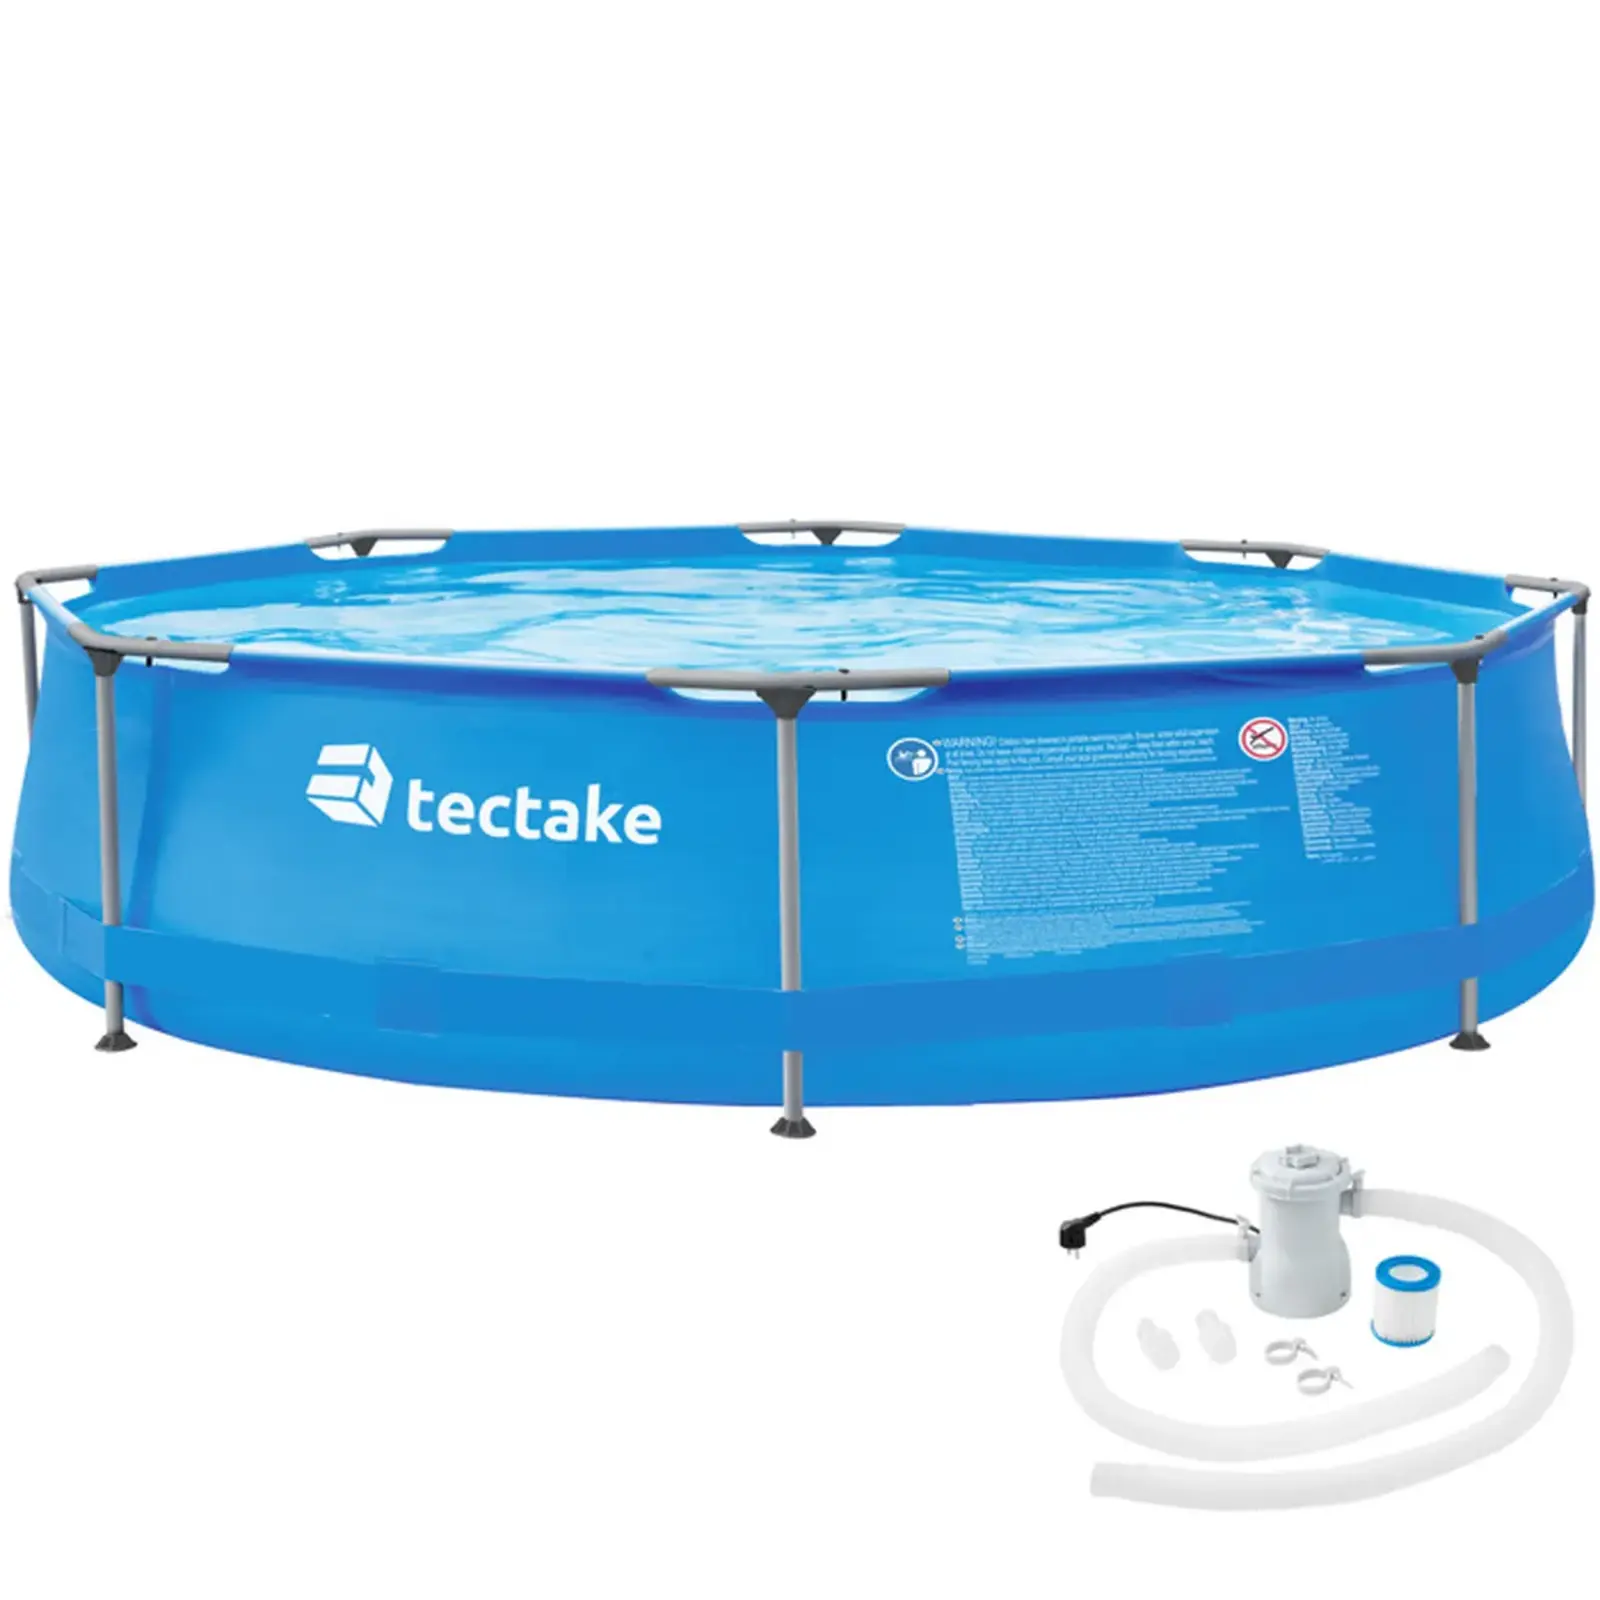 Bon plan Cdiscount : la piscine hors sol tubulaire TECTAKE est en promotion durant les soldes © Cdiscount